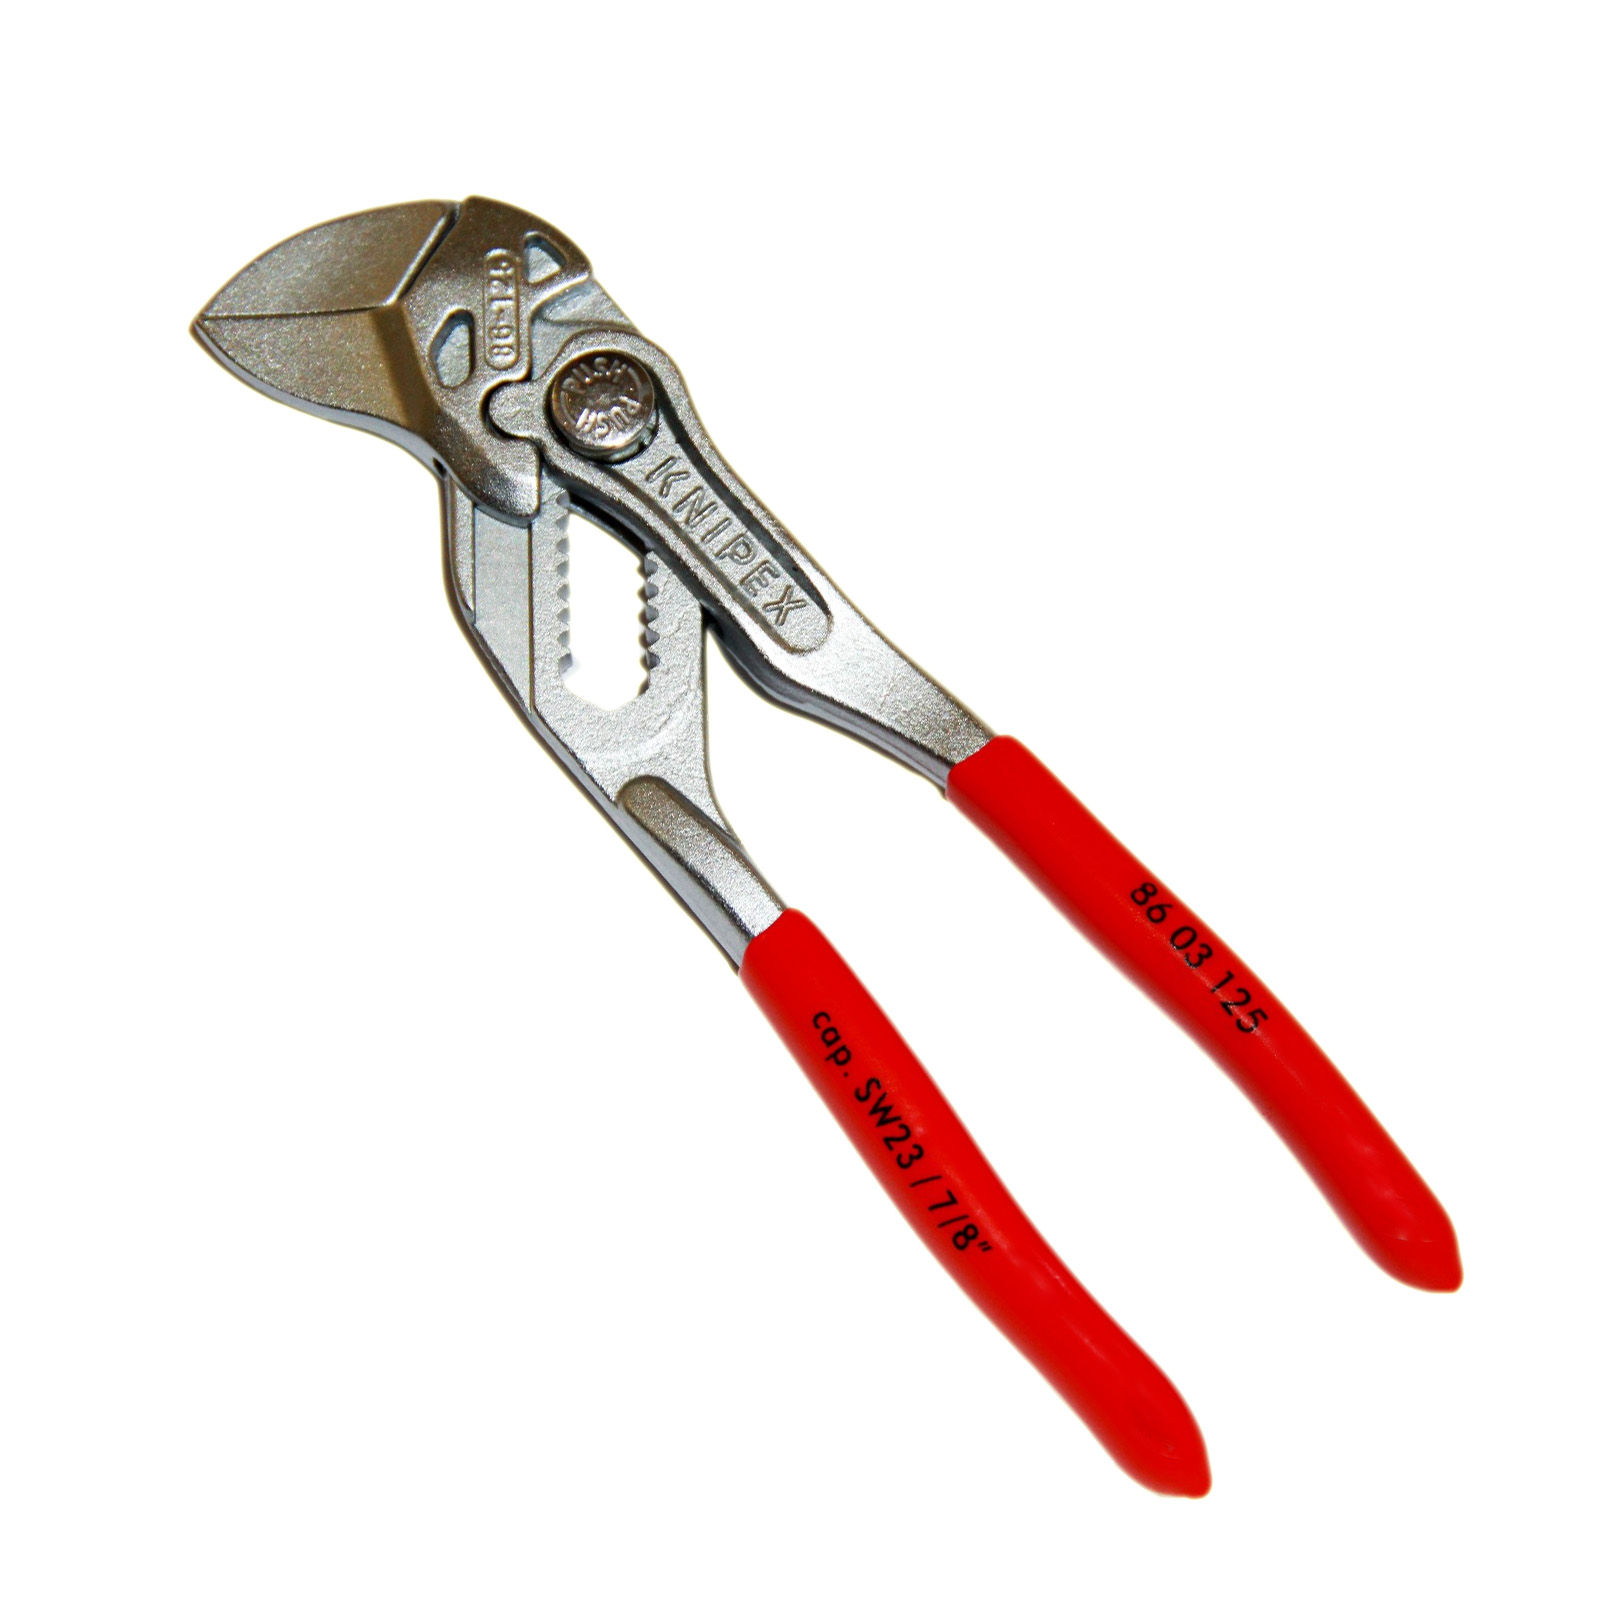 Mini Zangenschlüssel Zange und Schraubenschlüssel 125mm in einem Werkzeug  Knipex